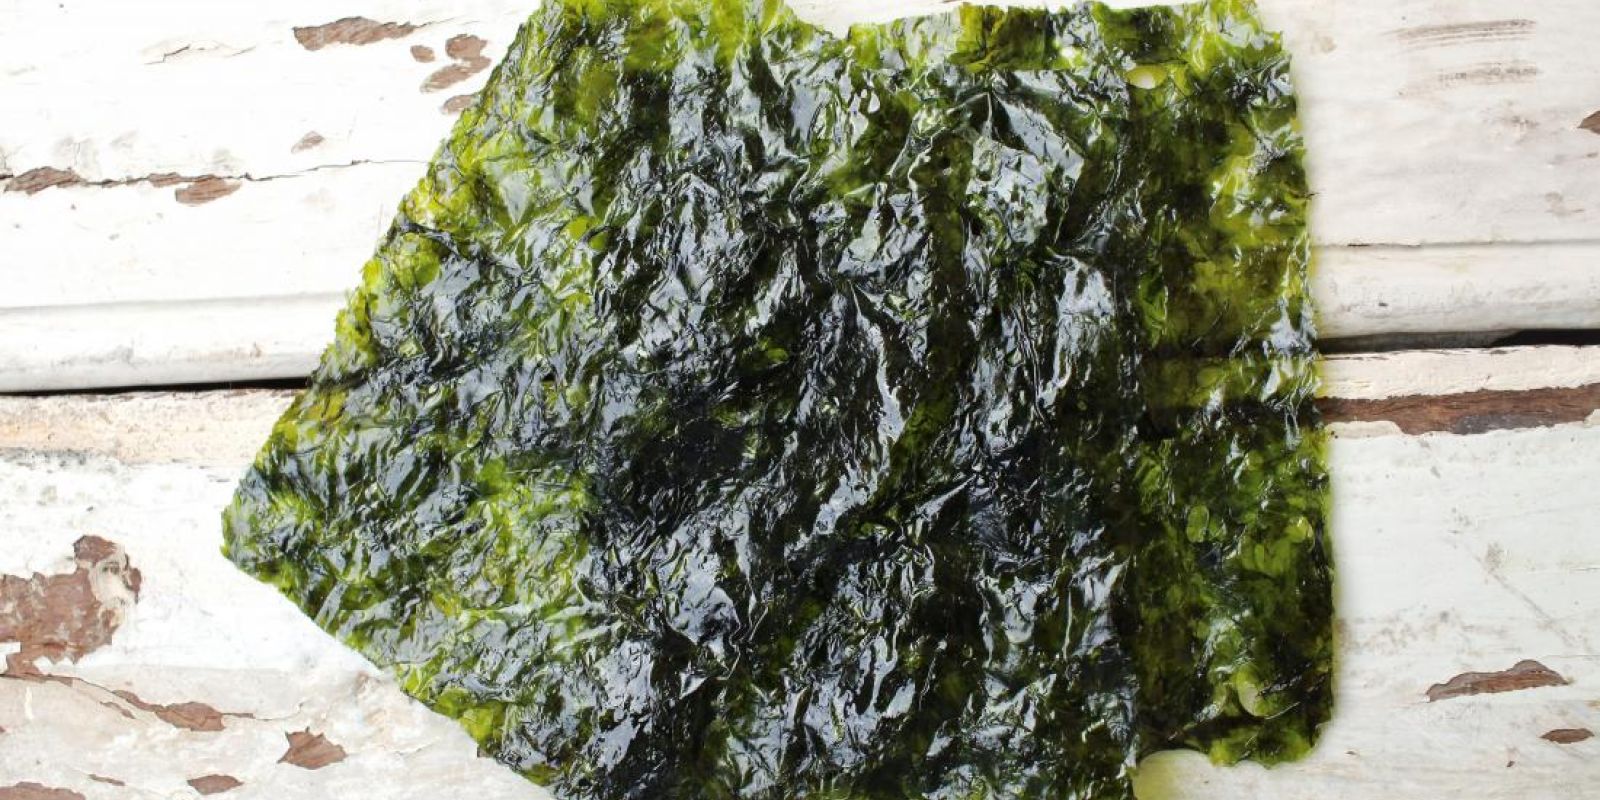 Bio Seaweed/Marine Algae Benefits On Hair & Health purcorganics seaweed 6d52c290